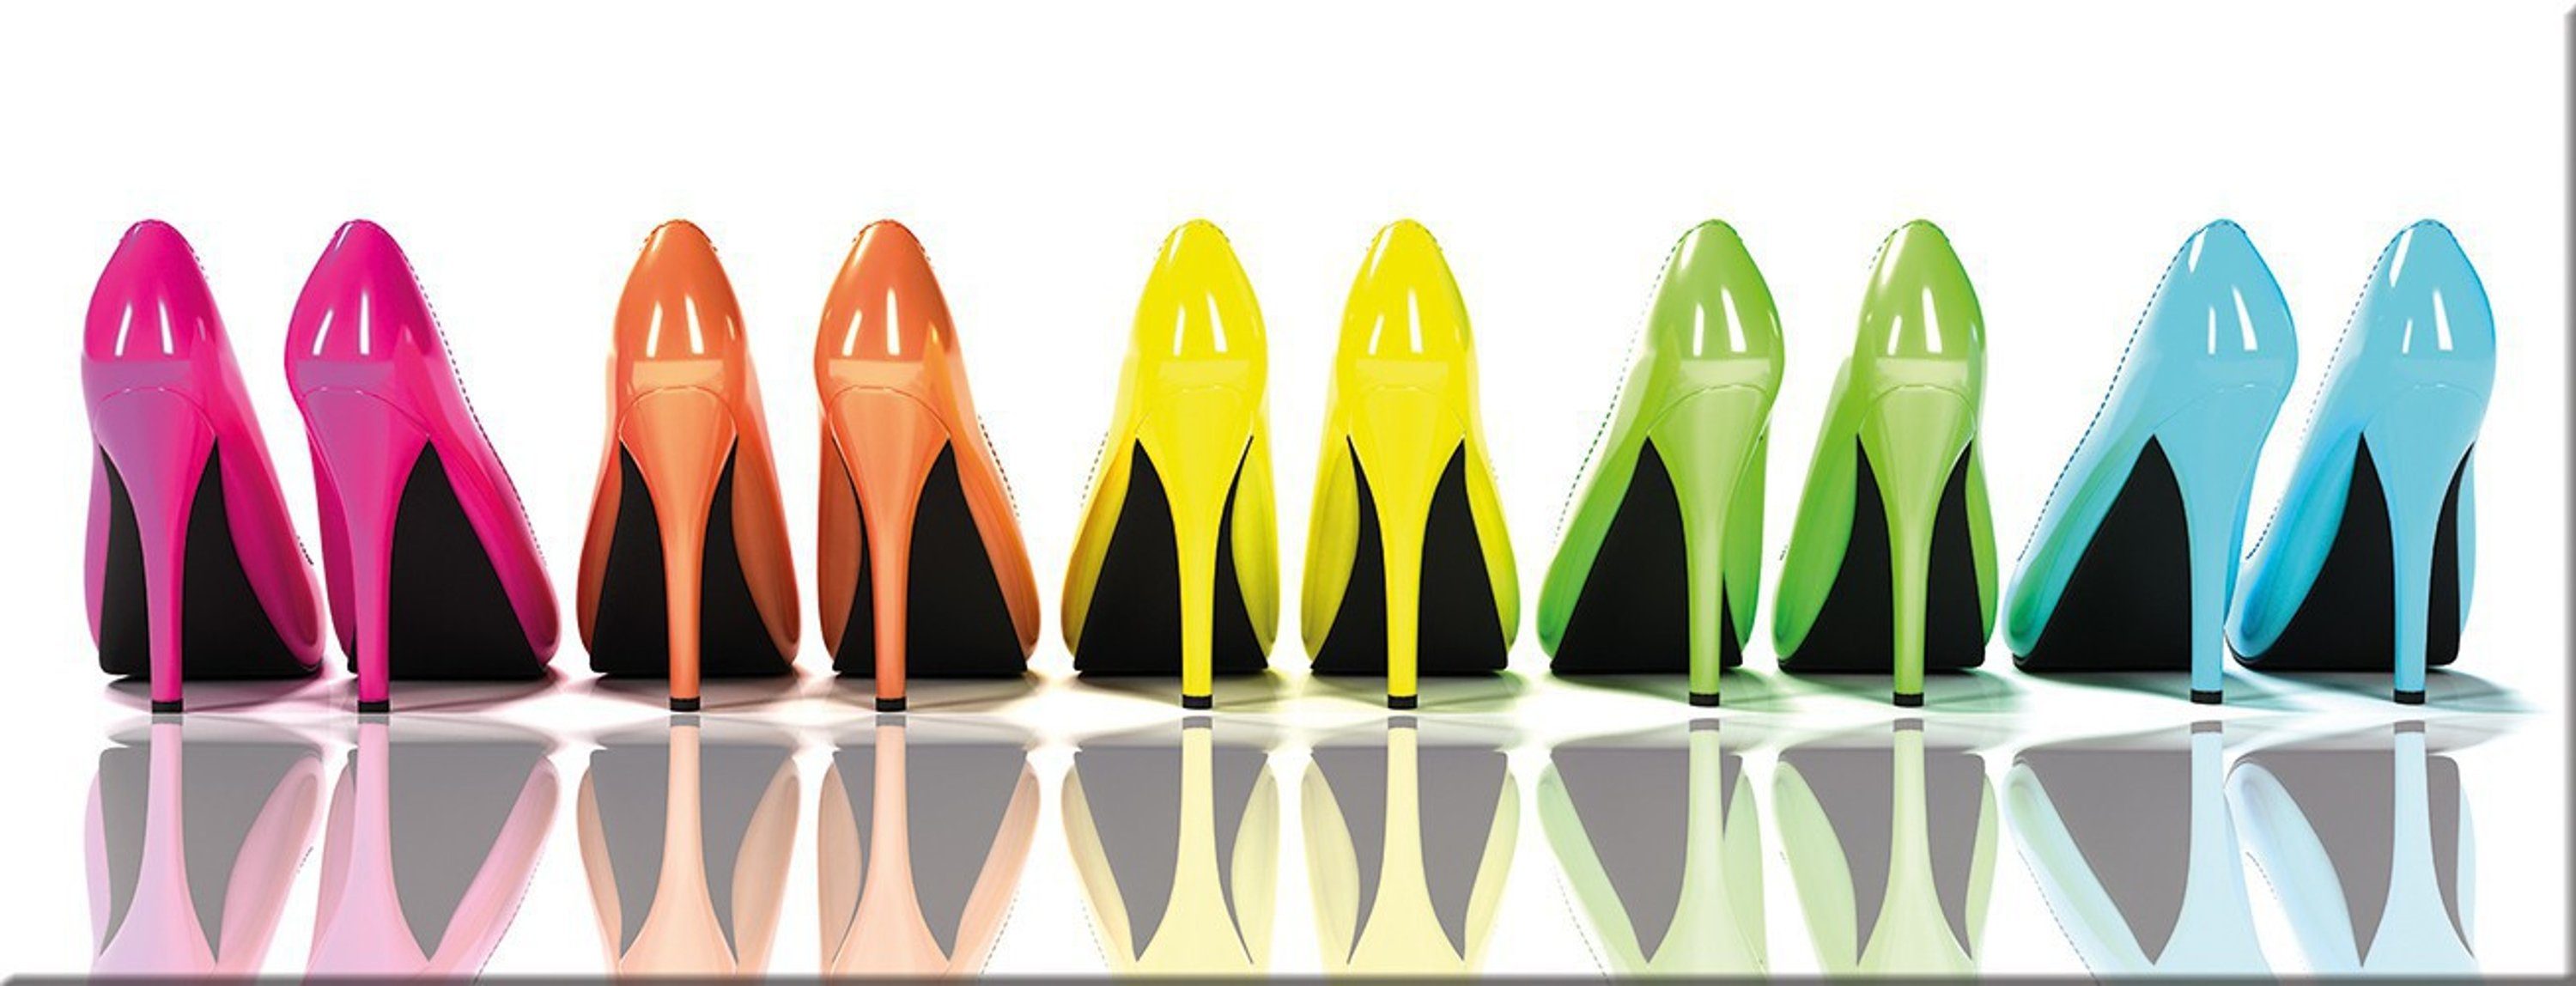 artissimo Glasbild Glasbild 80x30cm Bild für Garderobe: Schuhe Bild High-Heels Glas Fashion aus bunt